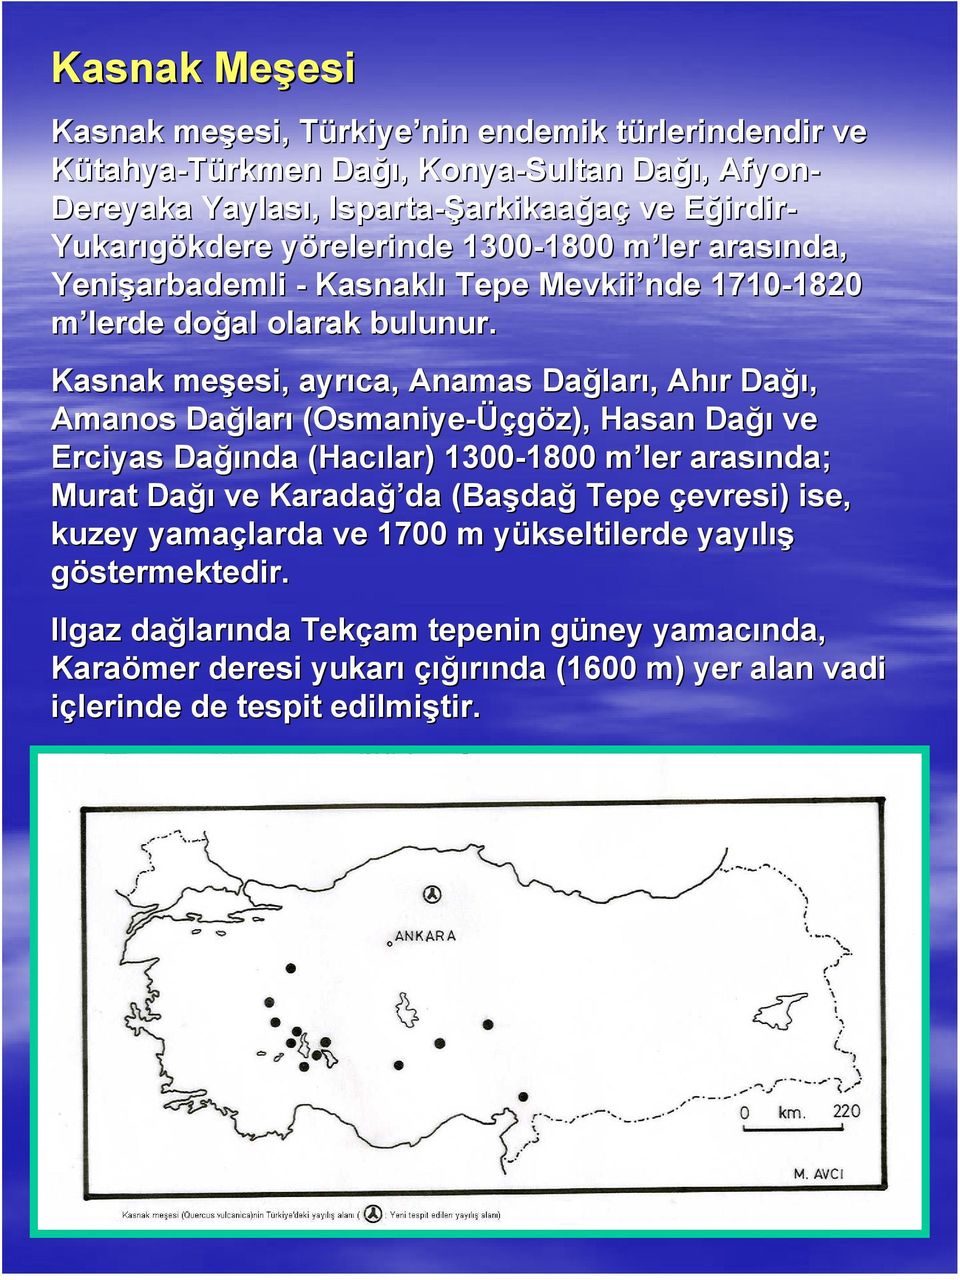 Kasnak meşesi, esi, ayrıca, Anamas Dağlar ları,, Ahır r Dağı ğı, Amanos Dağlar ları (Osmaniye-Üç Üçgöz), Hasan Dağı ve Erciyas Dağı ğında (Hacılar) 1300-1800 1800 m ler arasında; Murat Dağı ve